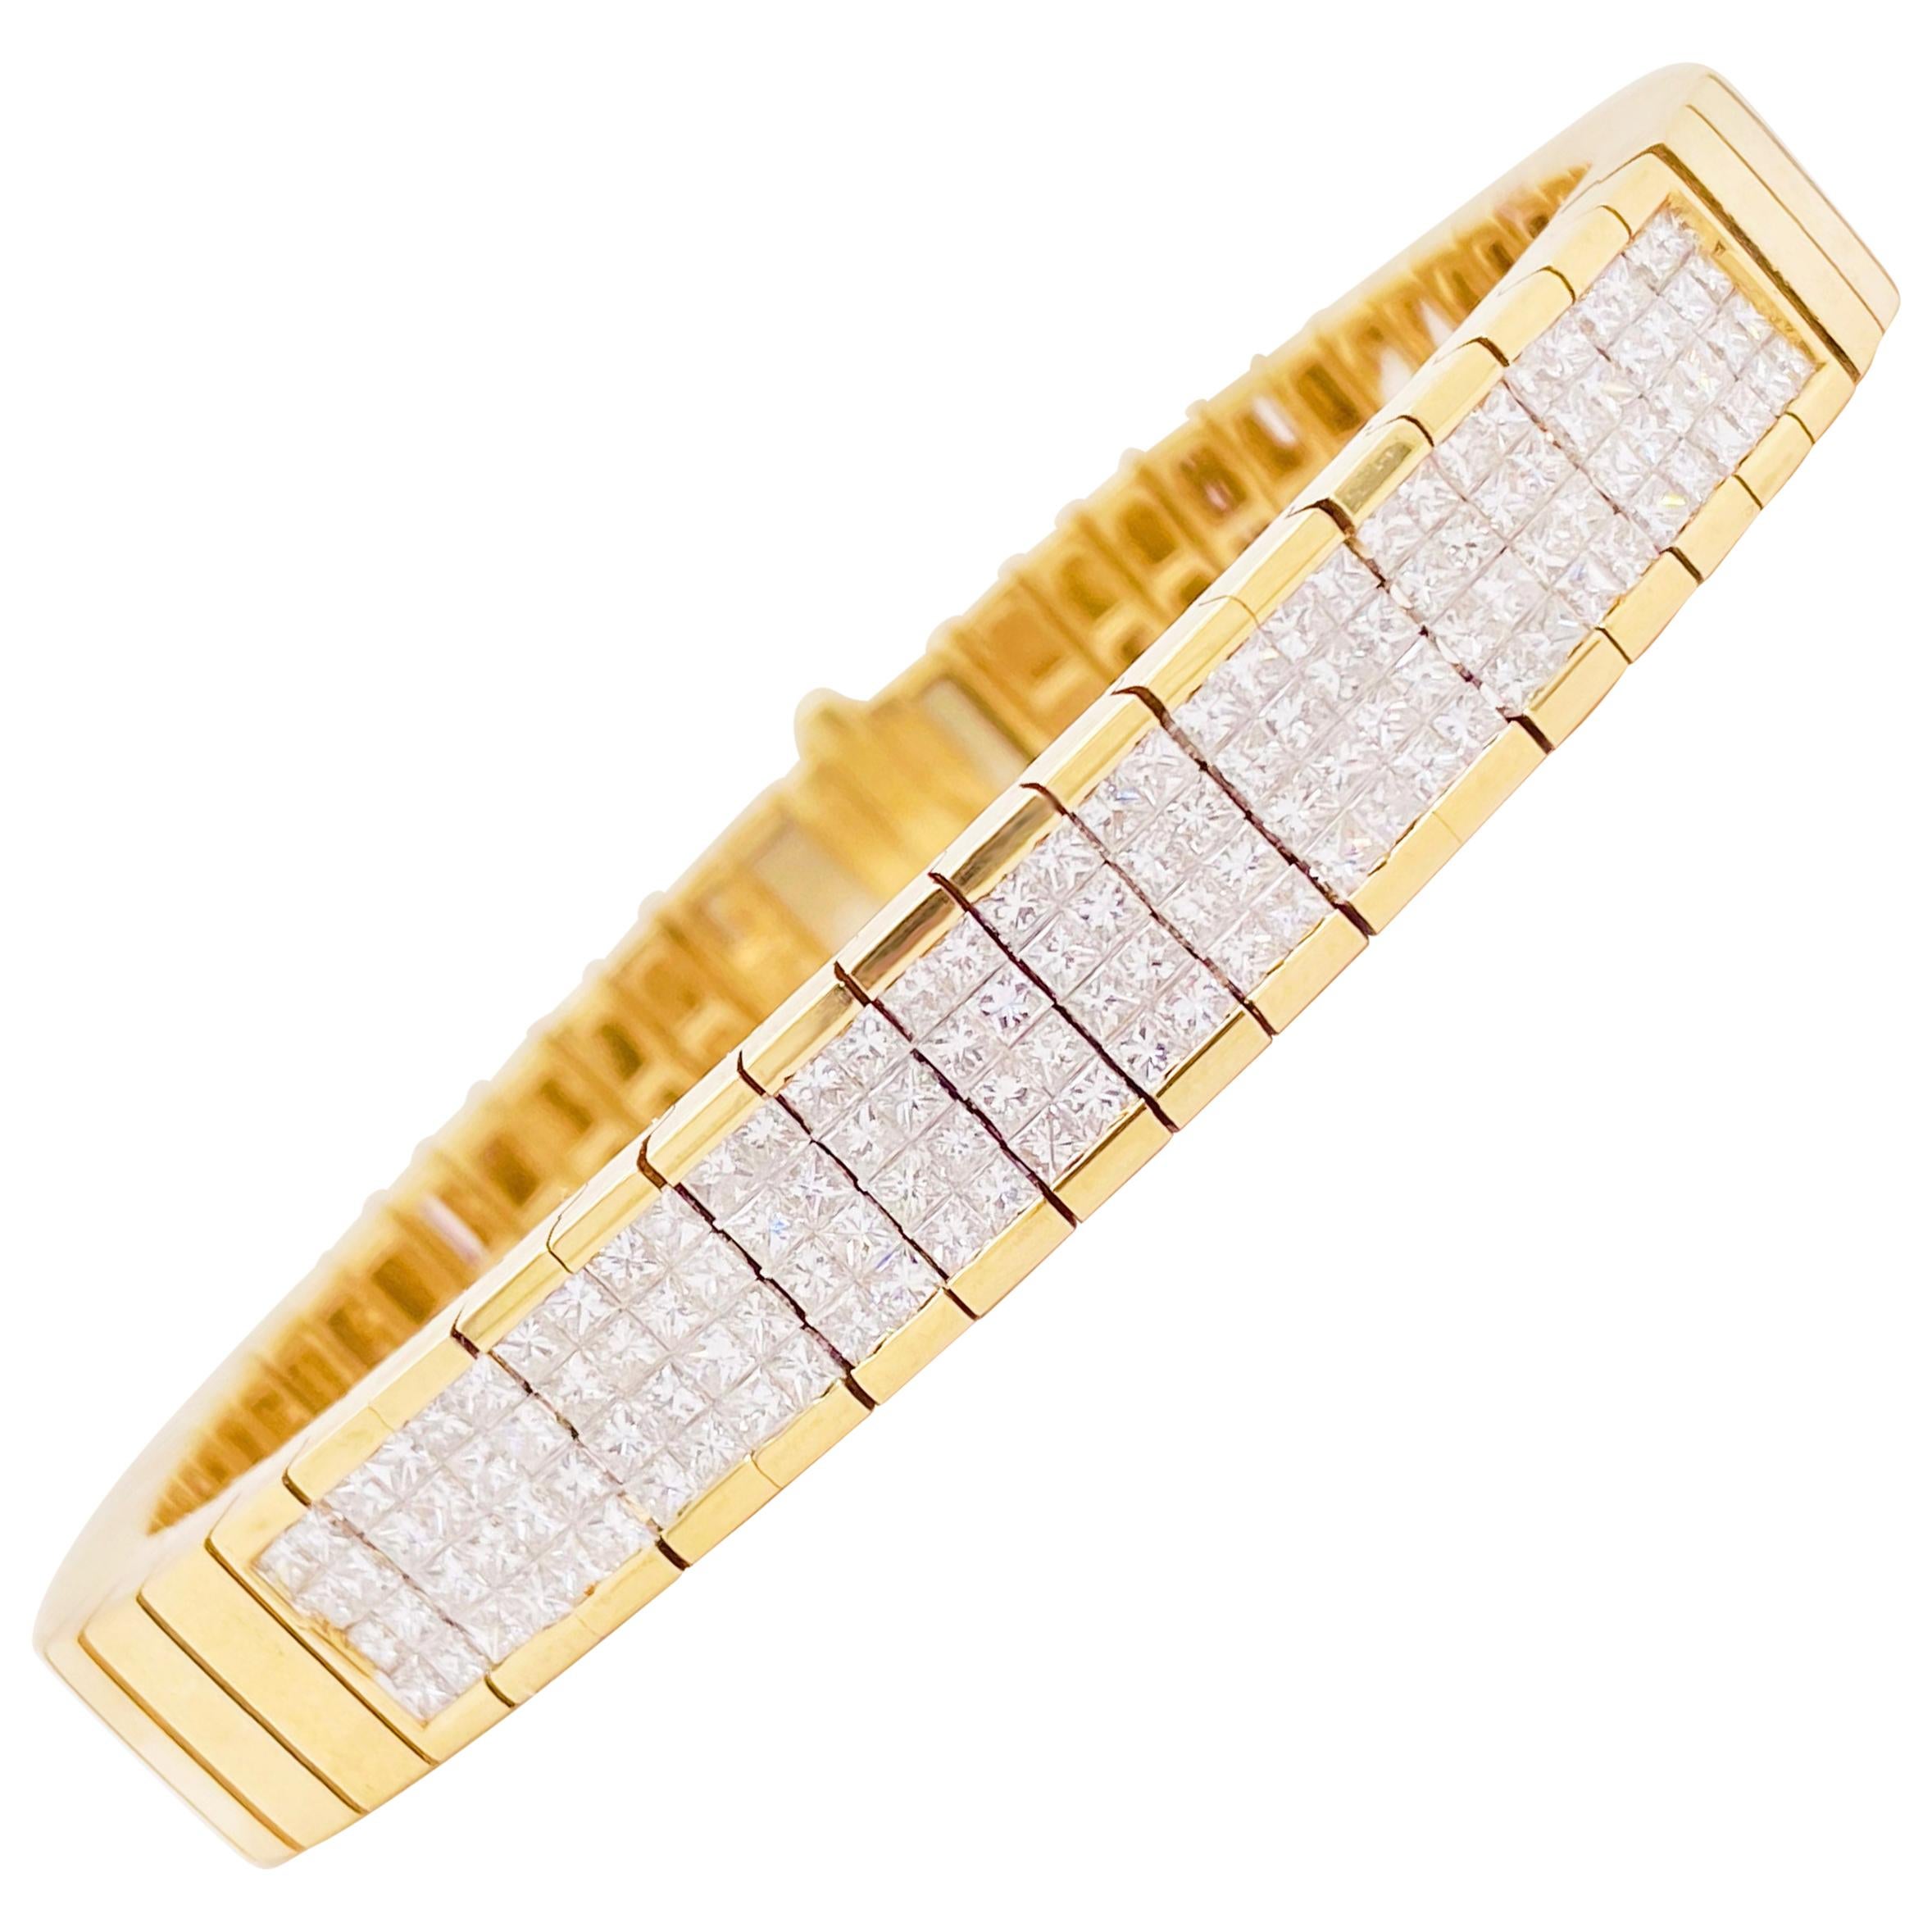 4 Carat Princess Cut Diamond Paved Gold Bracelet, 4.00 Carat Total Weight Dia